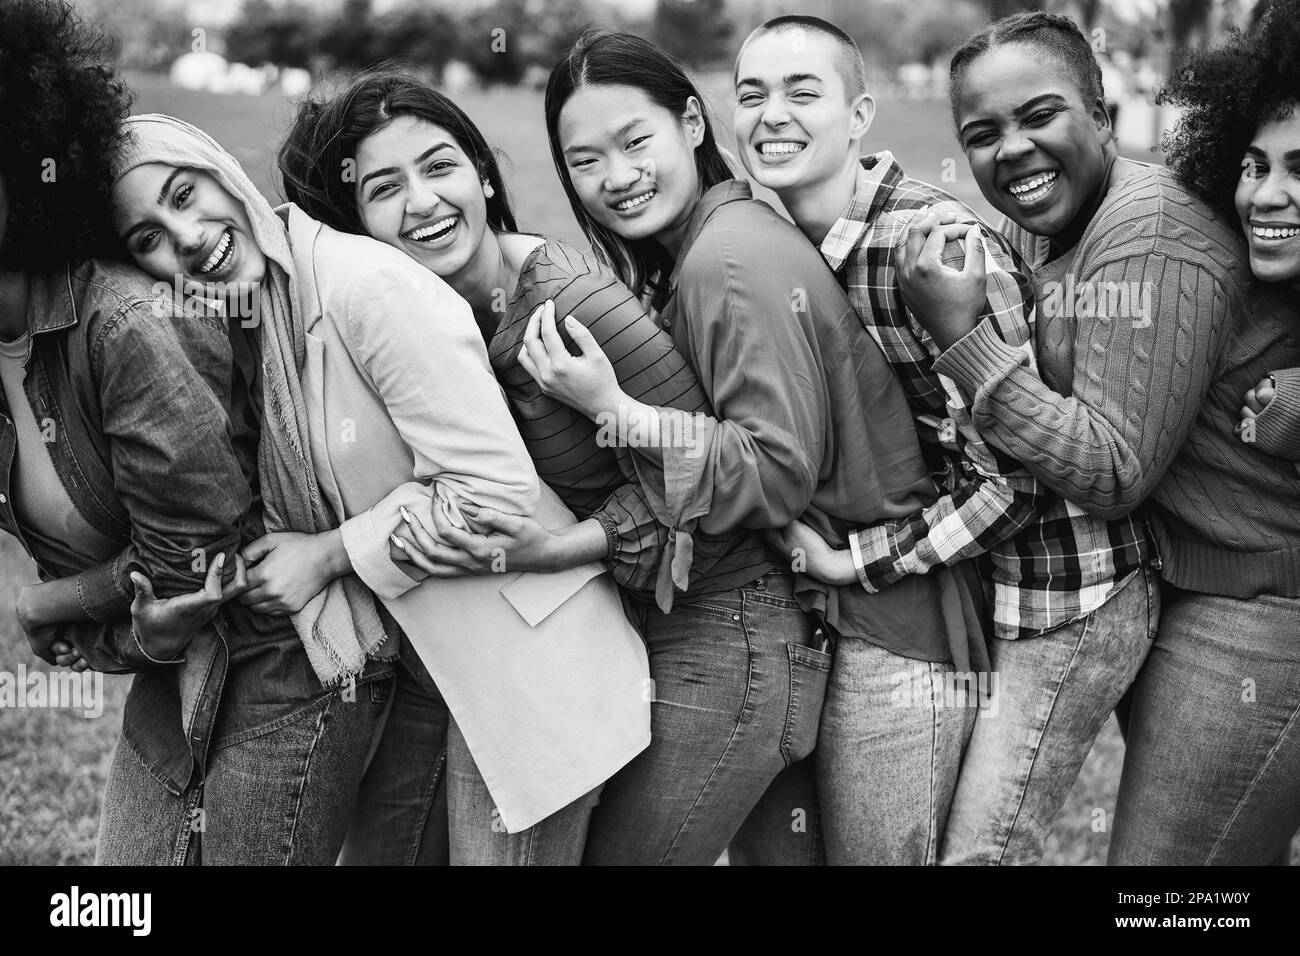 Junge, multiethnische Frauen, die Spaß miteinander haben, draußen zu lachen - Fokus auf afrikanisches Mädchengesicht - Schwarz-Weiß-Schnitt Stockfoto